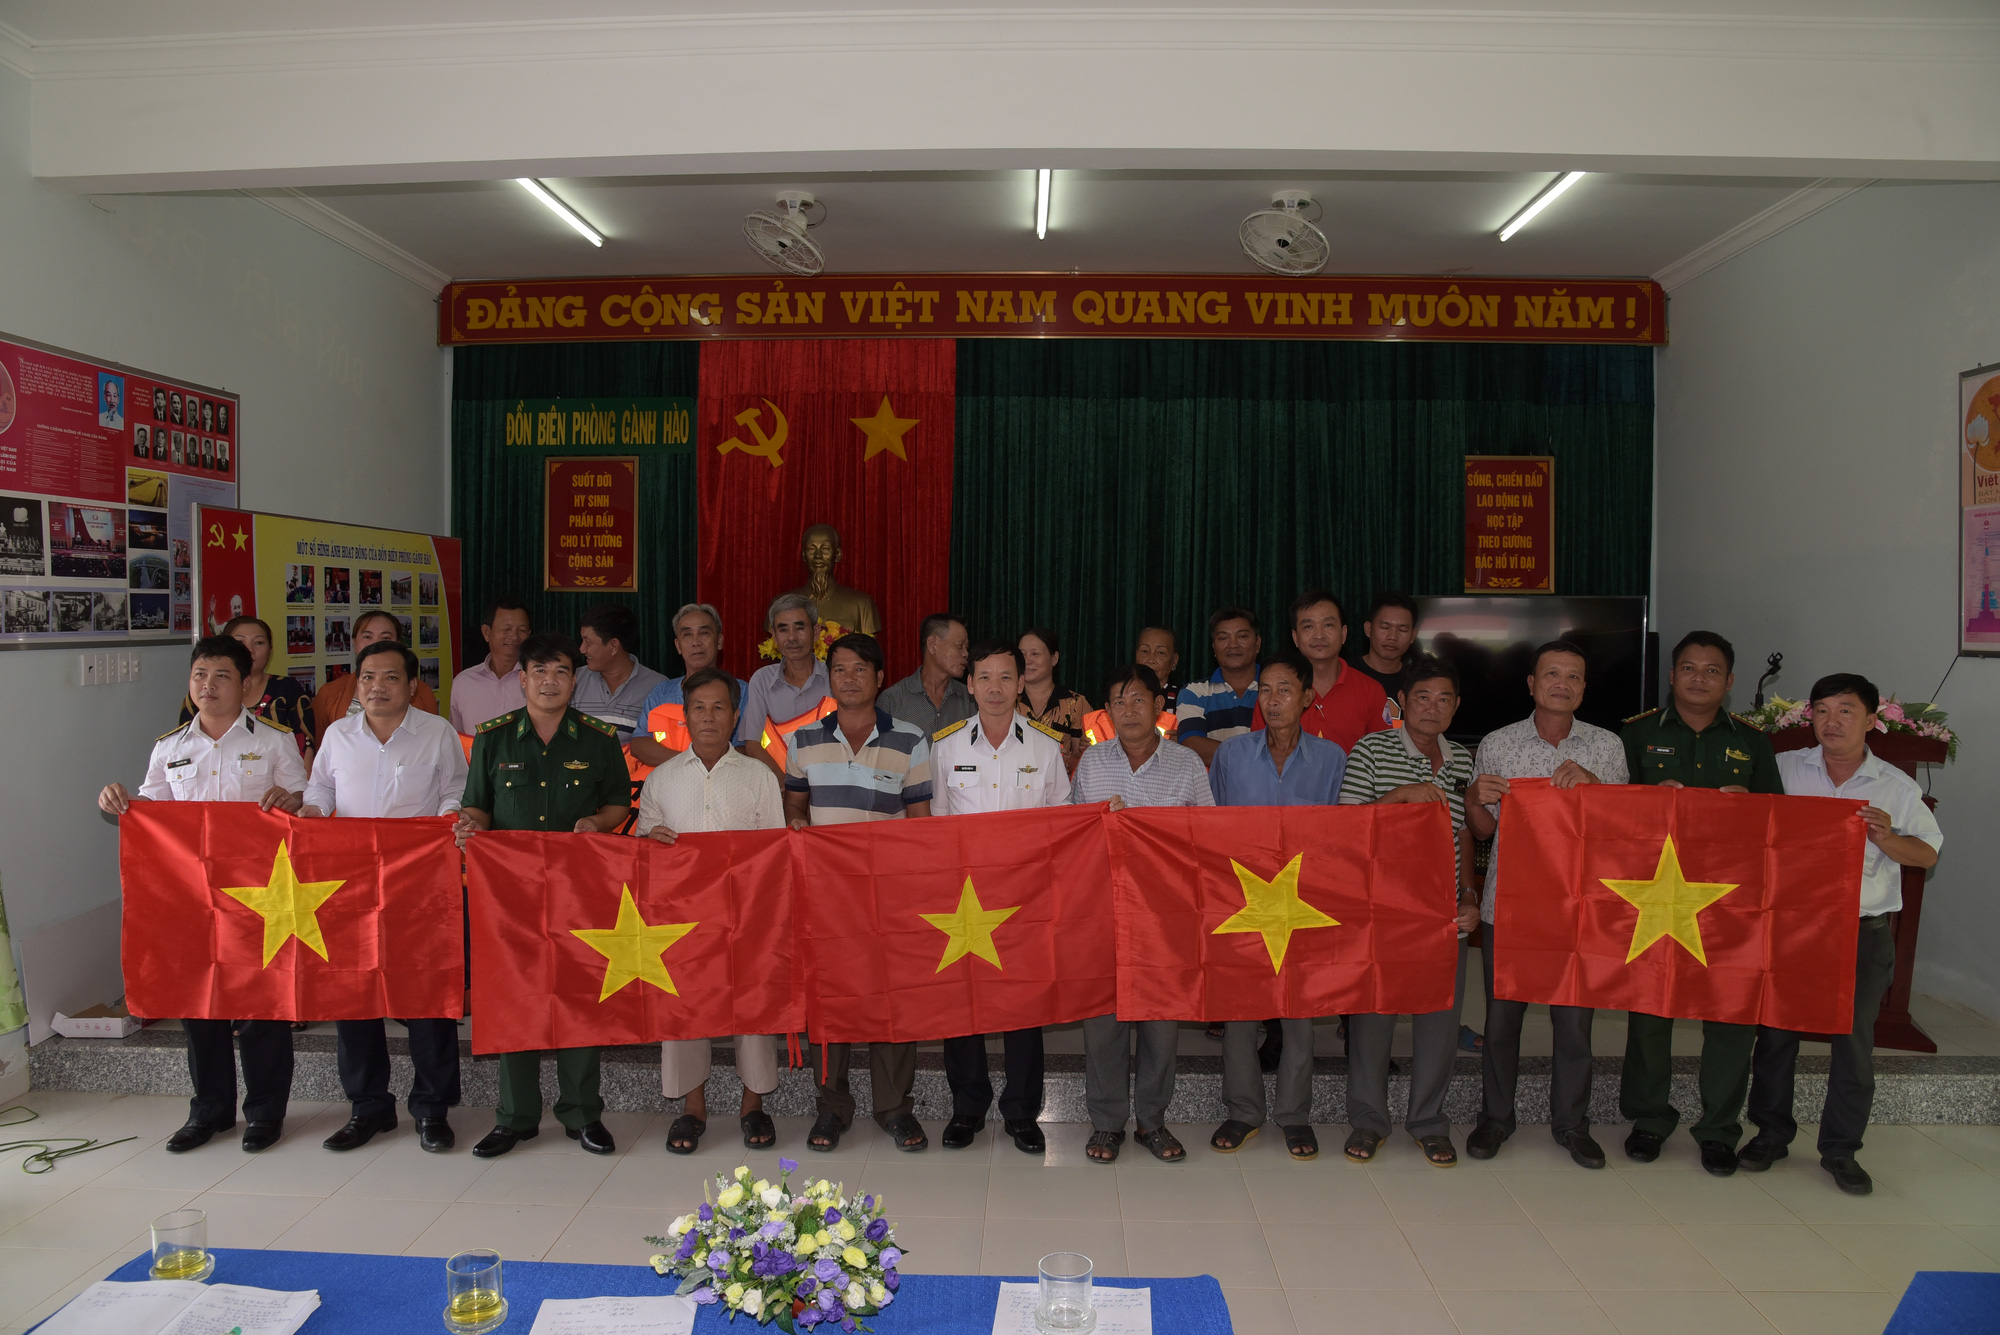 Lá cờ Tổ quốc:
Lá cờ Tổ quốc là biểu tượng của sự tự hào dân tộc. Hãy tìm hiểu thông tin về lá cờ Tổ quốc cùng với hình ảnh rực rỡ màu sắc trên trang web trong năm 2024 này. Cảm nhận nét đẹp tuyệt vời của lá cờ Tổ quốc Việt Nam.